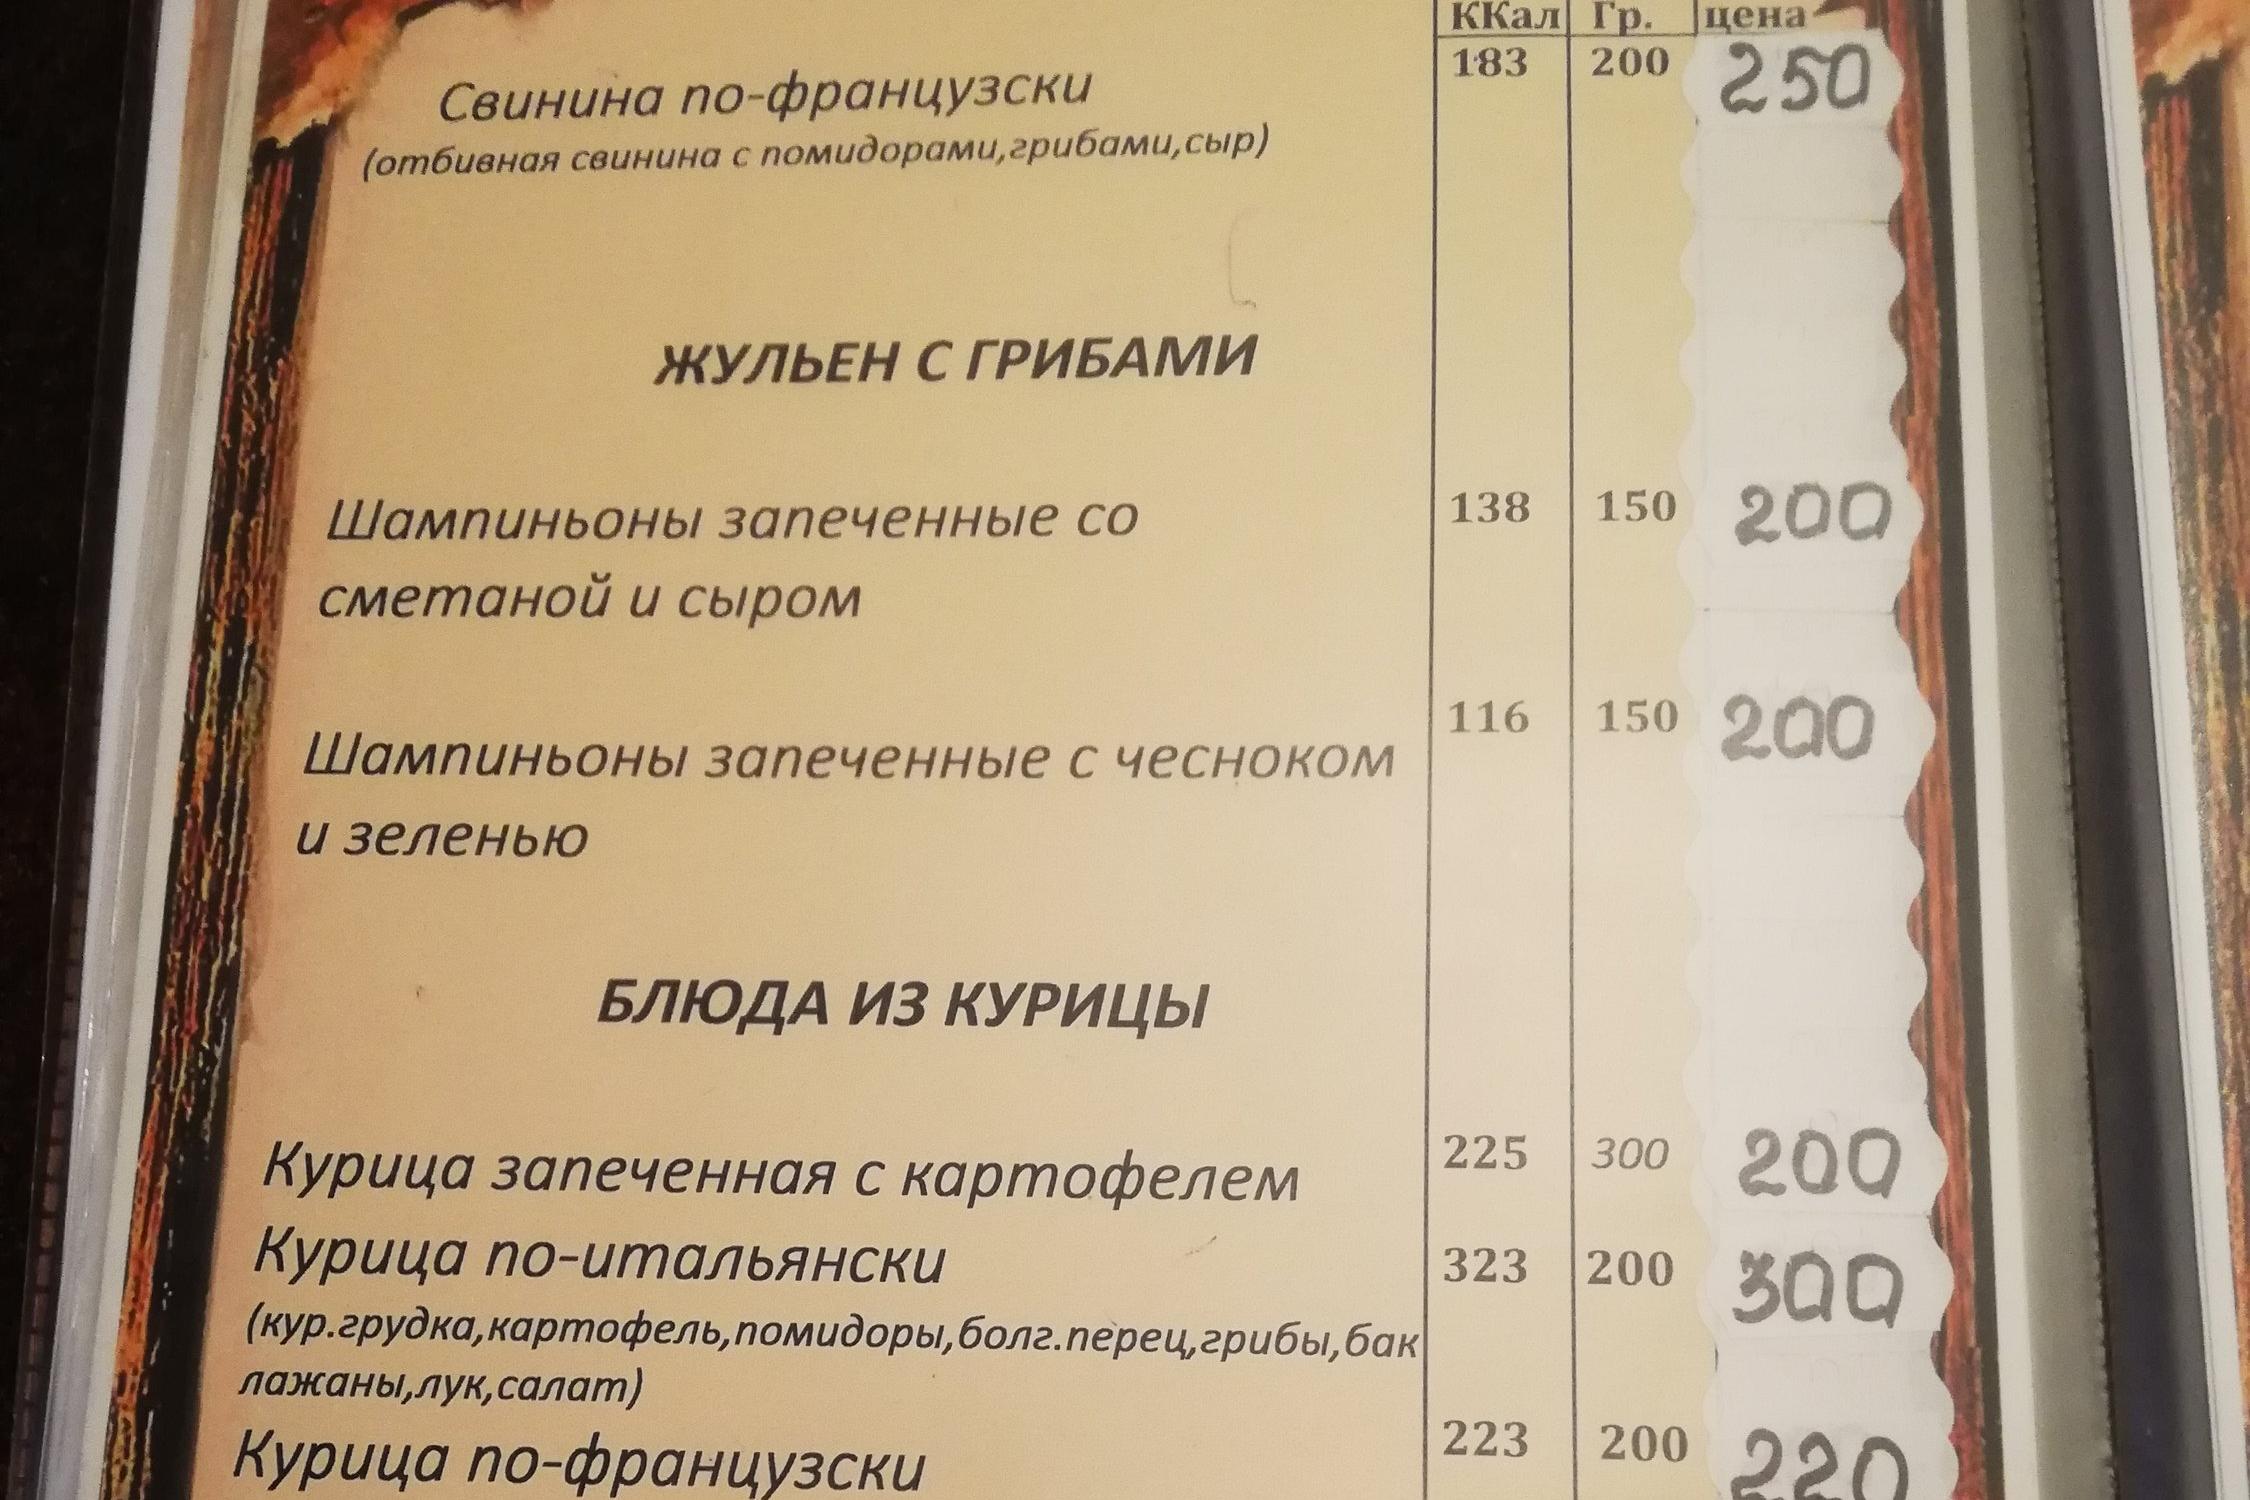 Кафе и рестораны тольятти автозаводский район список недорого с ценами